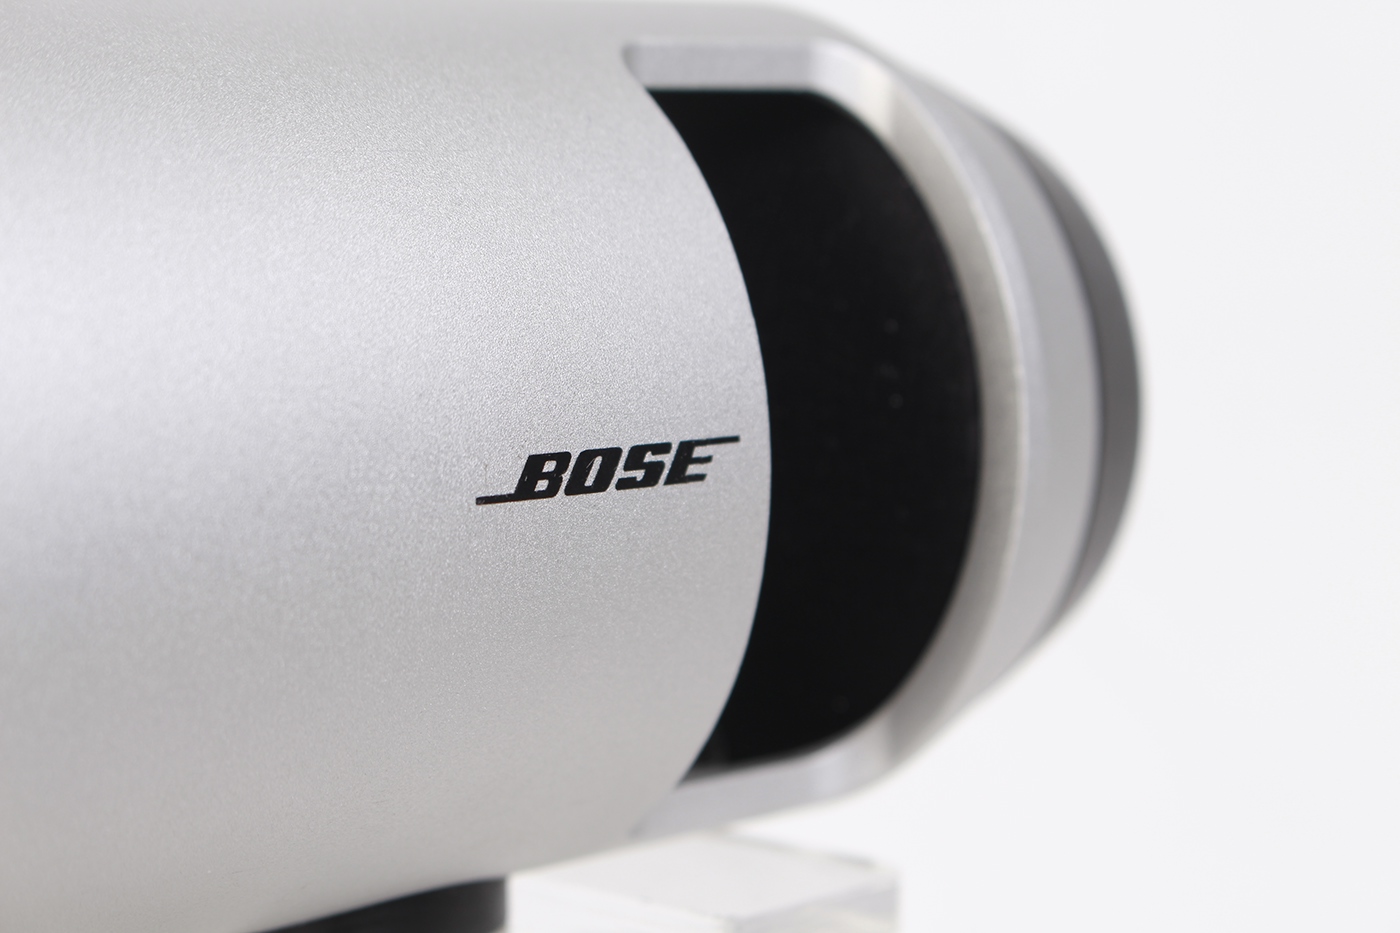 Bose Hair Dryer product home appliances aluminum concept